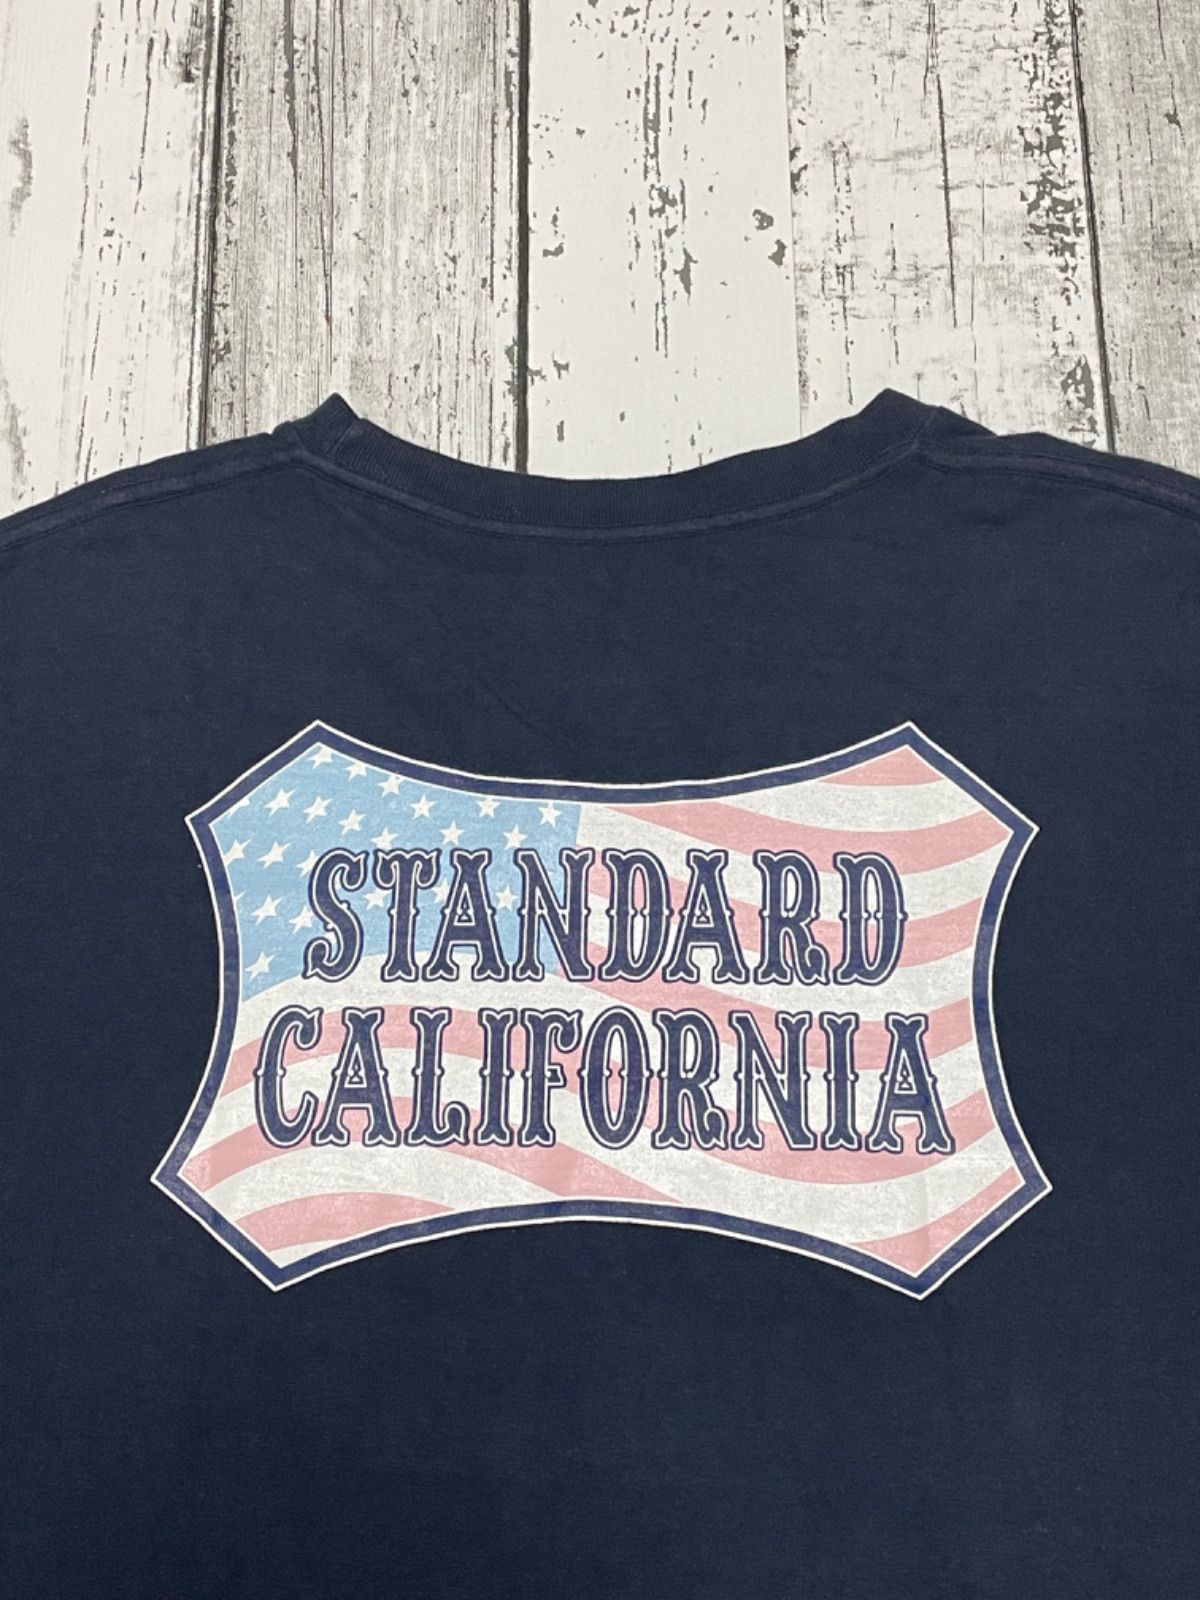 STANDARD CALIFORNIA スタンダードカリフォルニア Tシャツ 半袖 L 